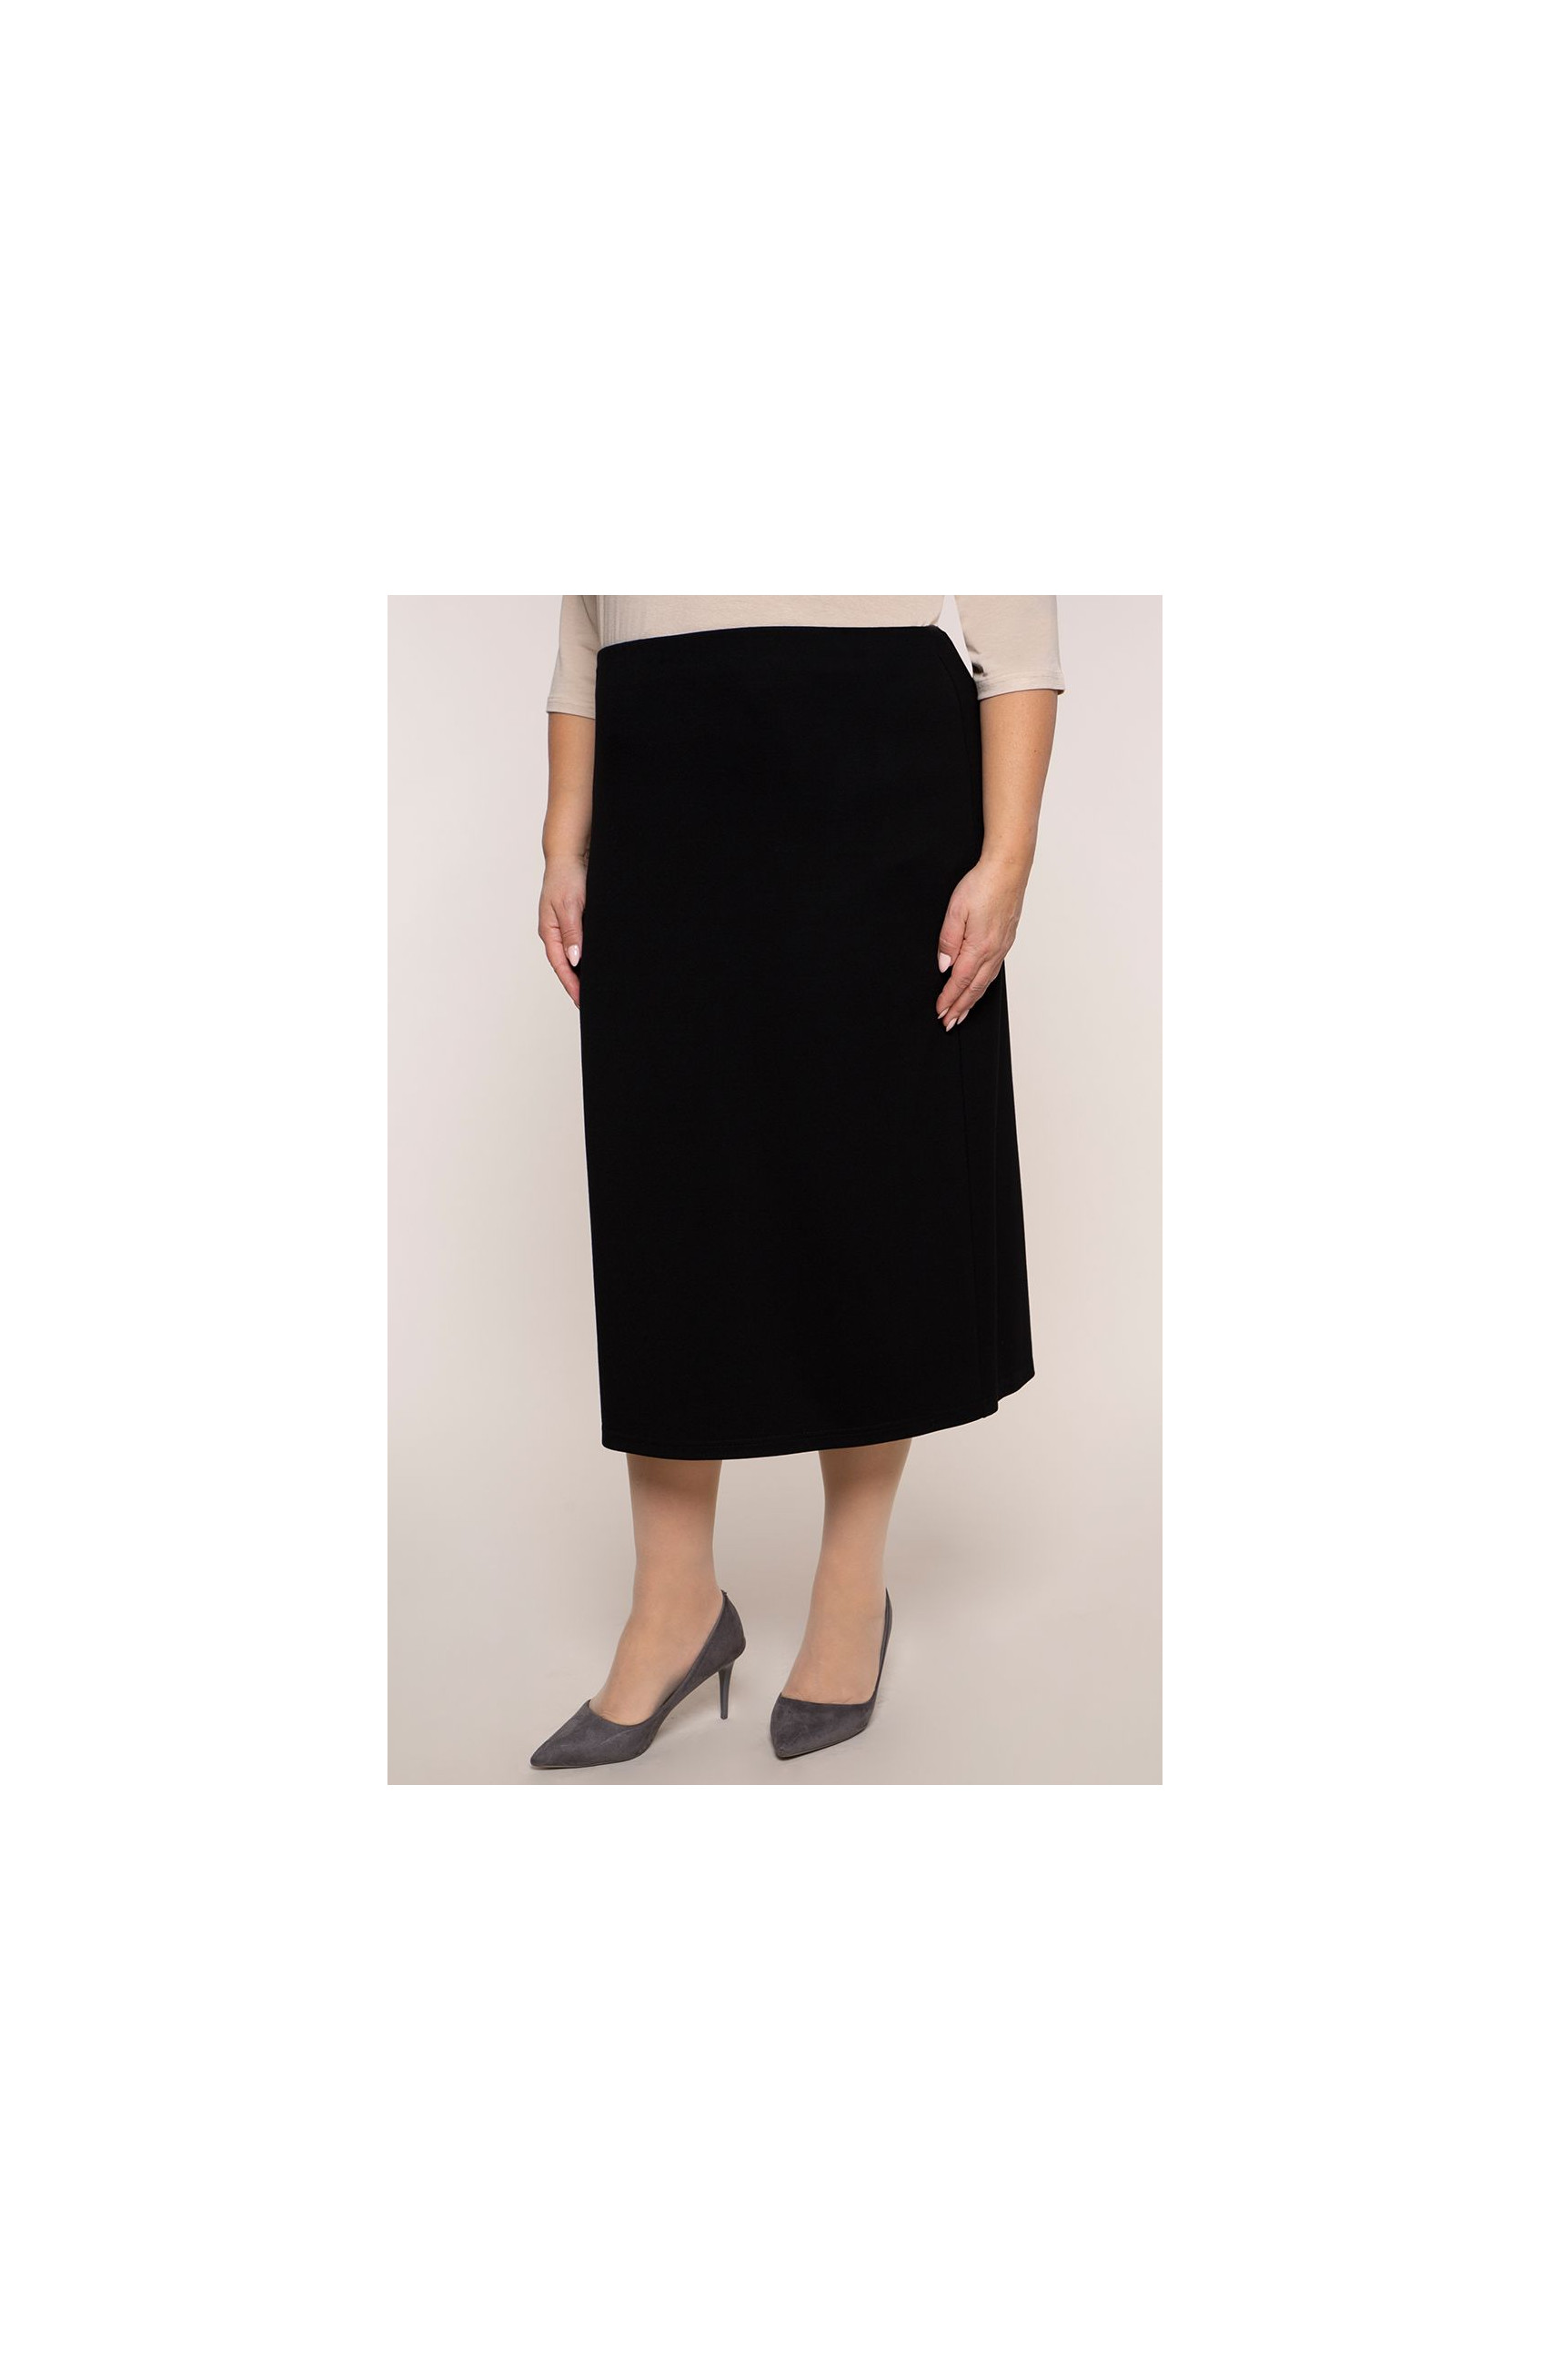 Ilgesnis elegantiškas juodas sijonas